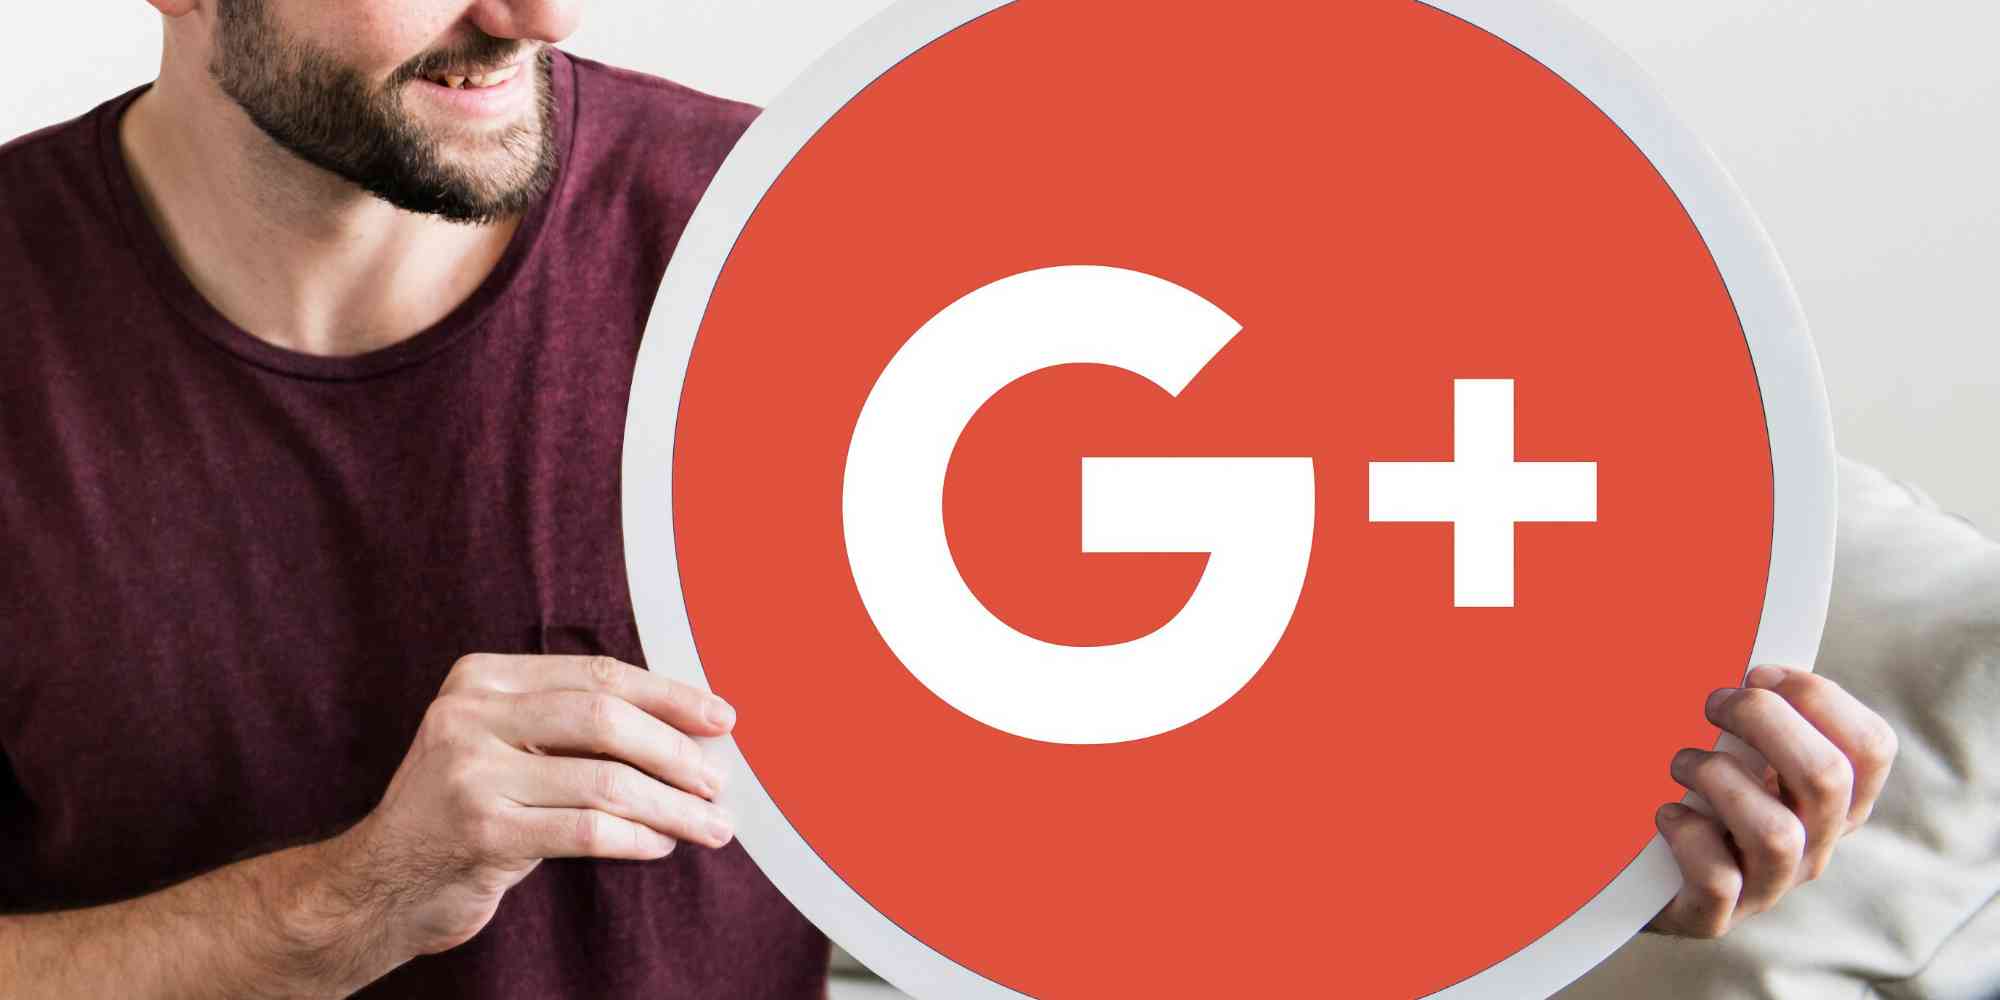 一个人举着一个带有 Google Plus (G+) 徽标的牌子。Google Plus 是谷歌拥有并运营的一个社交网络。徽标由一个红色圆圈组成，圆圈中心有一个白色的 "G+"标志。该网络是作为其他社交媒体平台的竞争对手而推出的，但由于使用率较低，以及维护一个符合消费者期望的成功产品所面临的挑战，最终于 2019 年 4 月面向消费者关闭。 在网站搜索引擎优化（SEO）方面，Google Plus 曾因社交信号而在影响搜索排名方面发挥过作用。在 Google Plus 上获得大量分享或 "+1"（相当于 "赞 "或 "加票"）的网页或内容，可能会对其搜索可见性产生积极影响。这是一套更广泛的战略的一部分，旨在提高网站在搜索引擎结果中的存在度，因为谷歌的算法会考虑各种因素，包括在其平台上的社交参与度。 然而，随着 Google Plus 不再活跃，它对搜索引擎优化的直接影响已不复存在。但是，来自不同平台的社交信号可以影响搜索引擎优化这一更广泛的原则仍然适用。